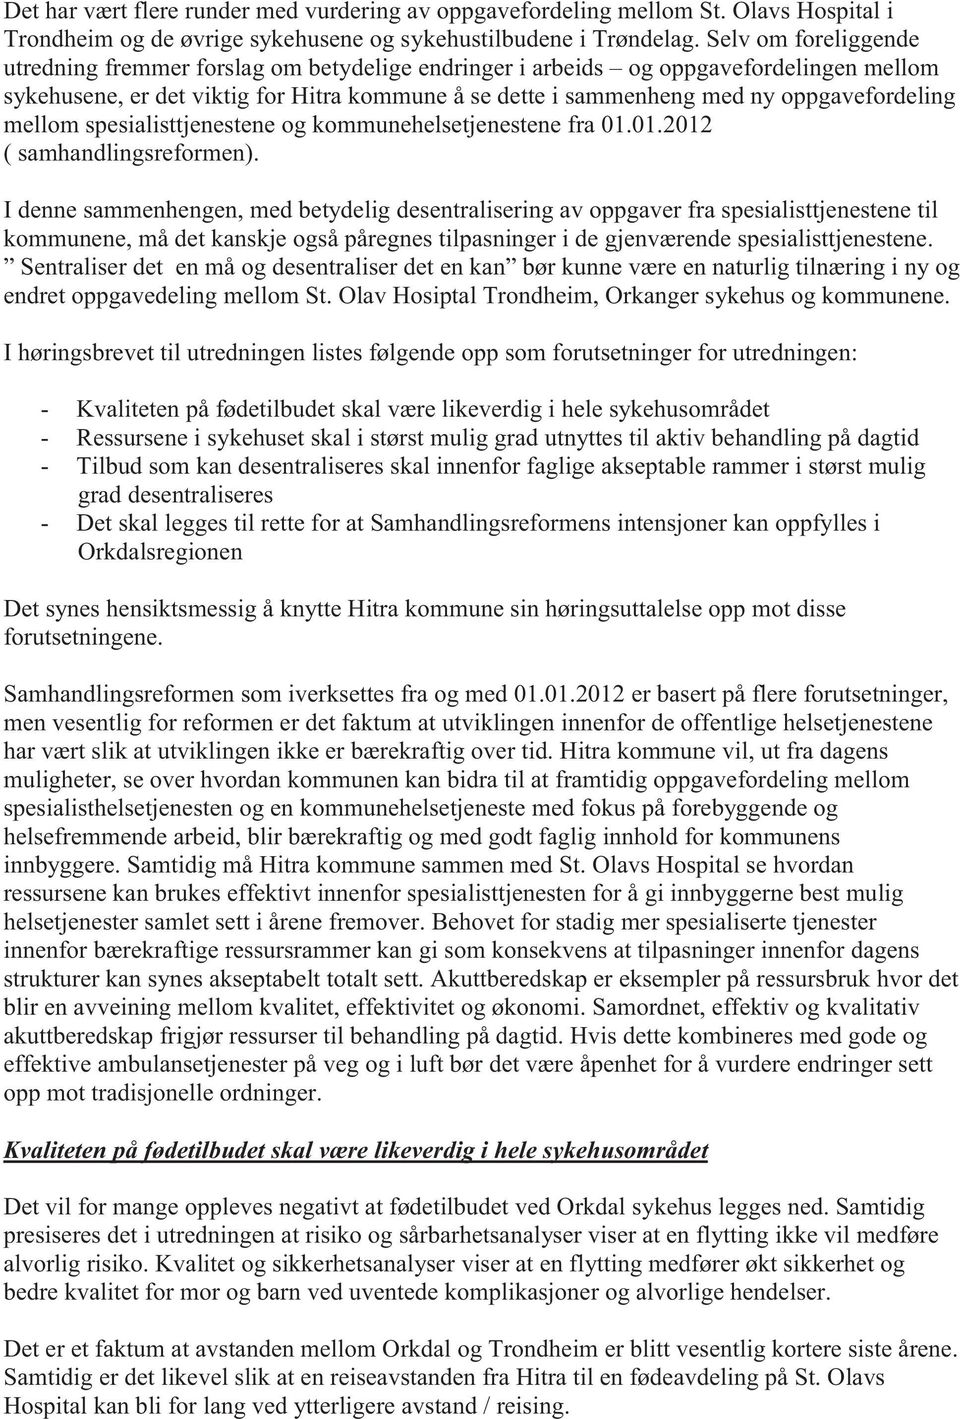 oppgavefordeling mellom spesialisttjenestene og kommunehelsetjenestene fra 01.01.2012 ( samhandlingsreformen).